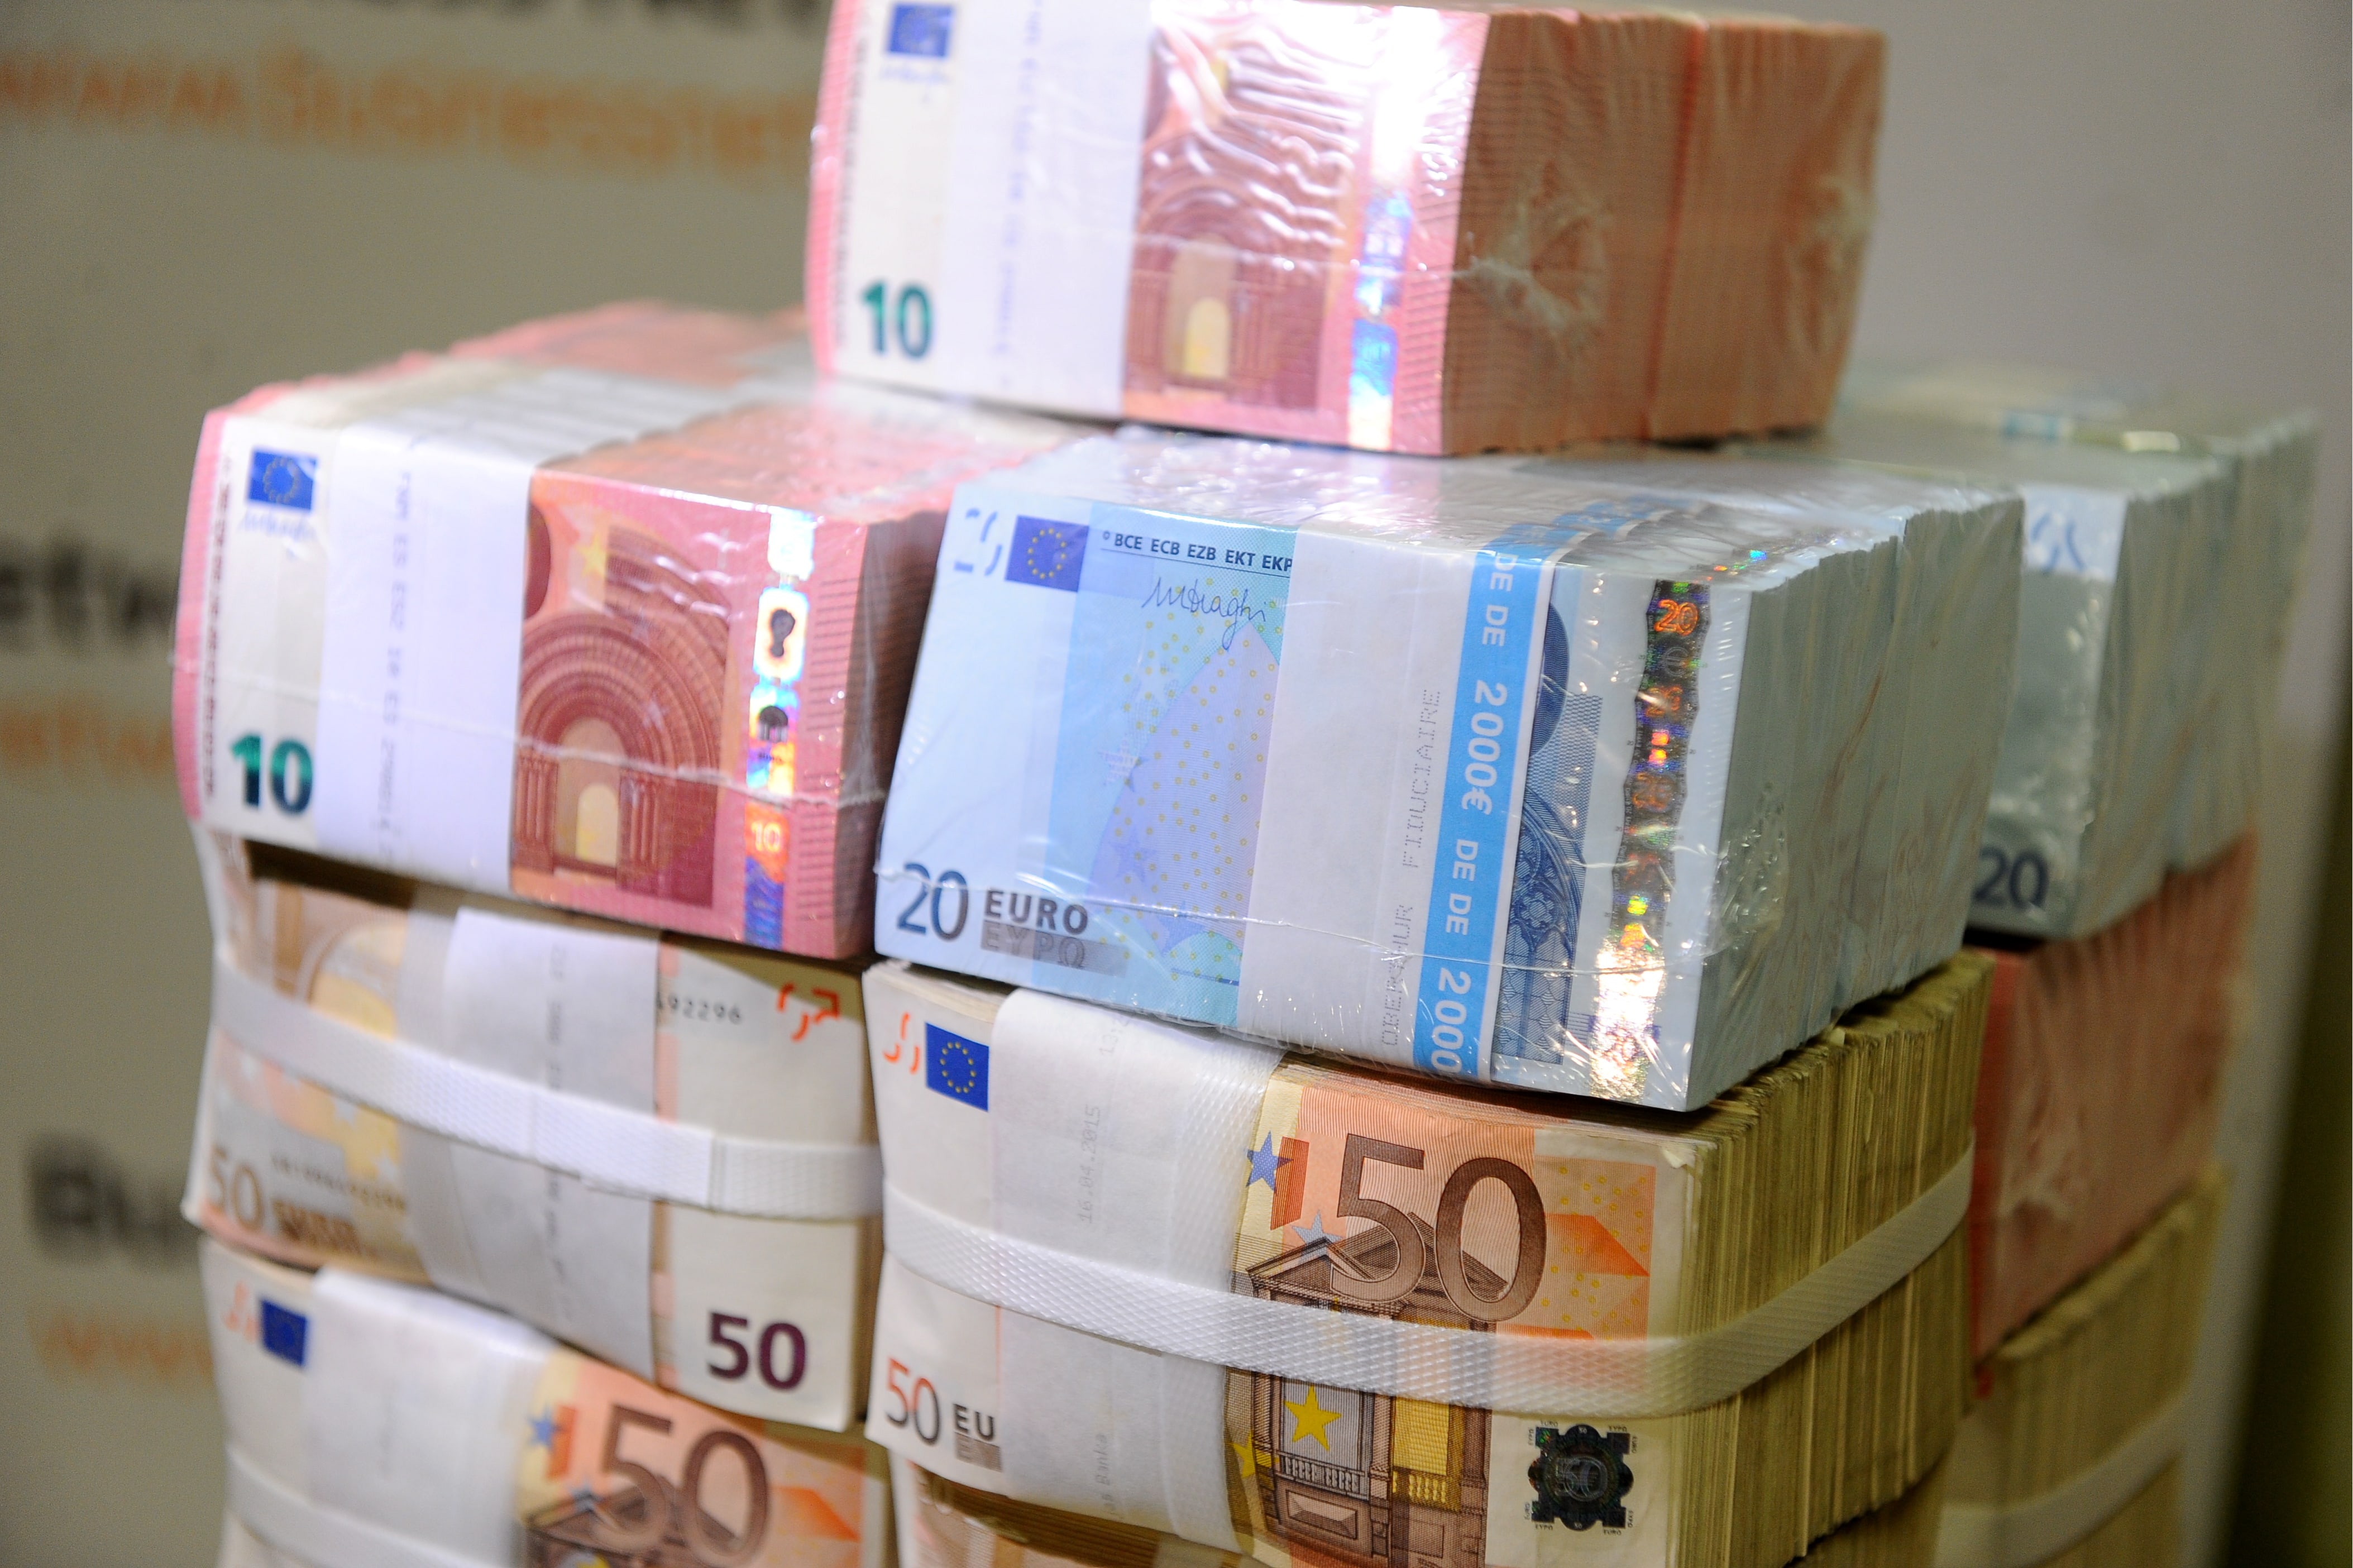 Много пачек денег крупными купюрами. Деньги евро. Миллиард евро. Пачки евро. Пачки денег евро.